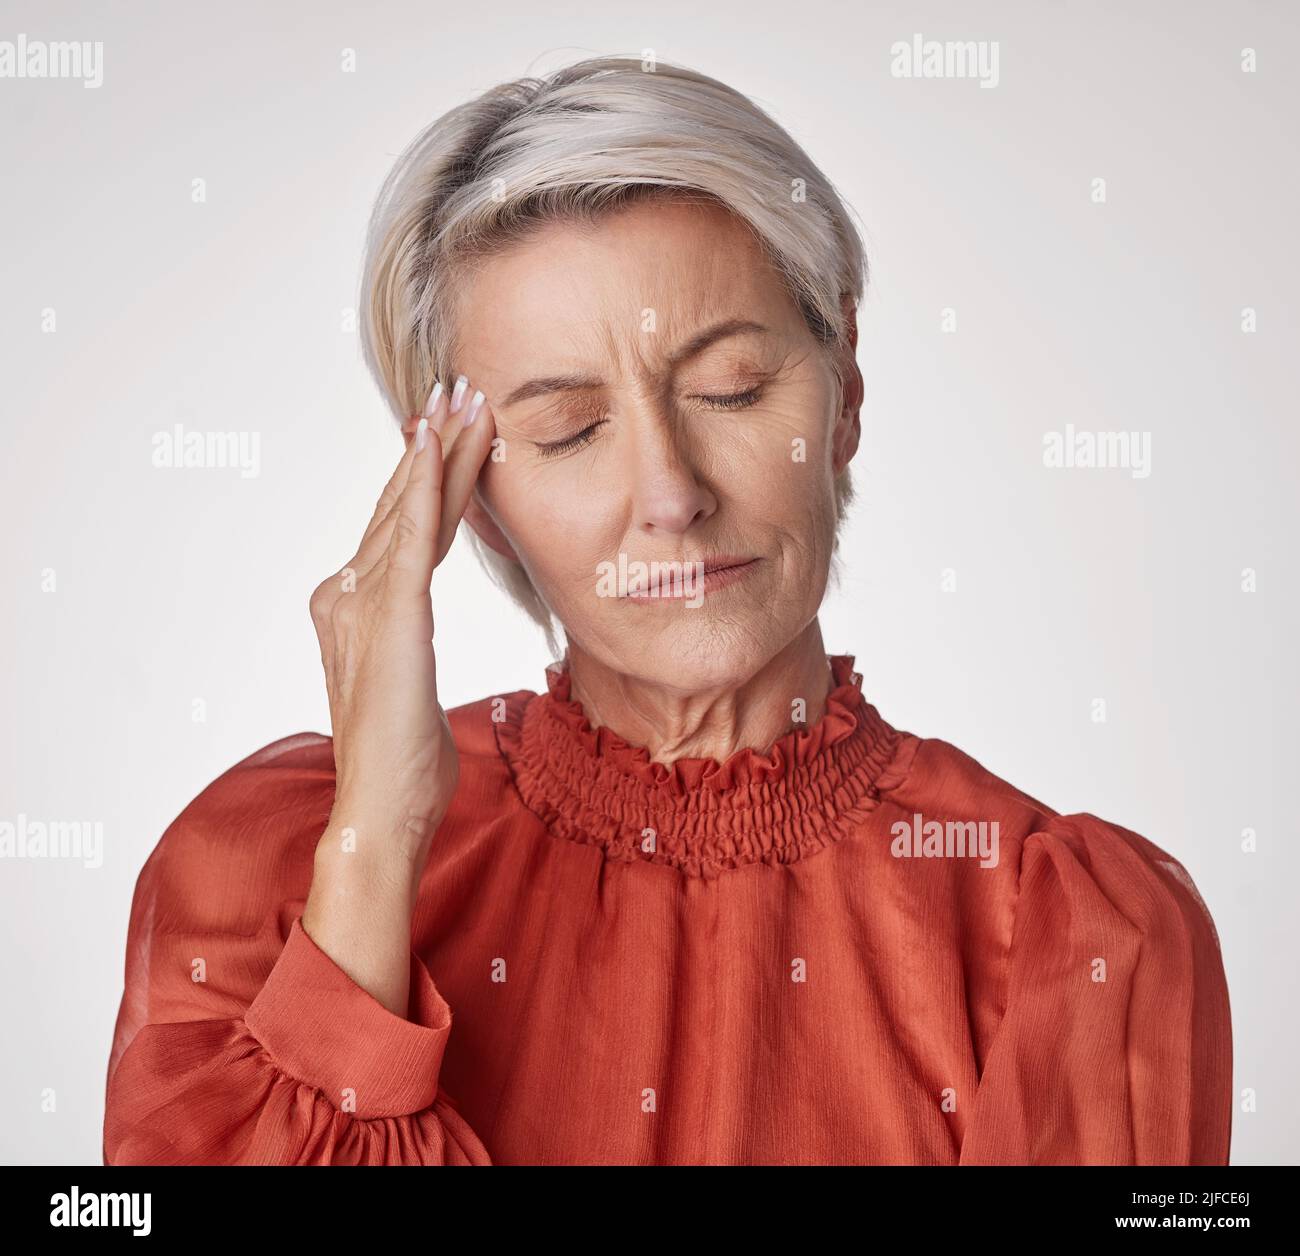 Eine reife Frau, die unter Kopfschmerzen leidet und gestresst aussieht, während sie vor einem grauen Copyspace-Hintergrund posiert. Alternde Frau, die Angst hat Stockfoto